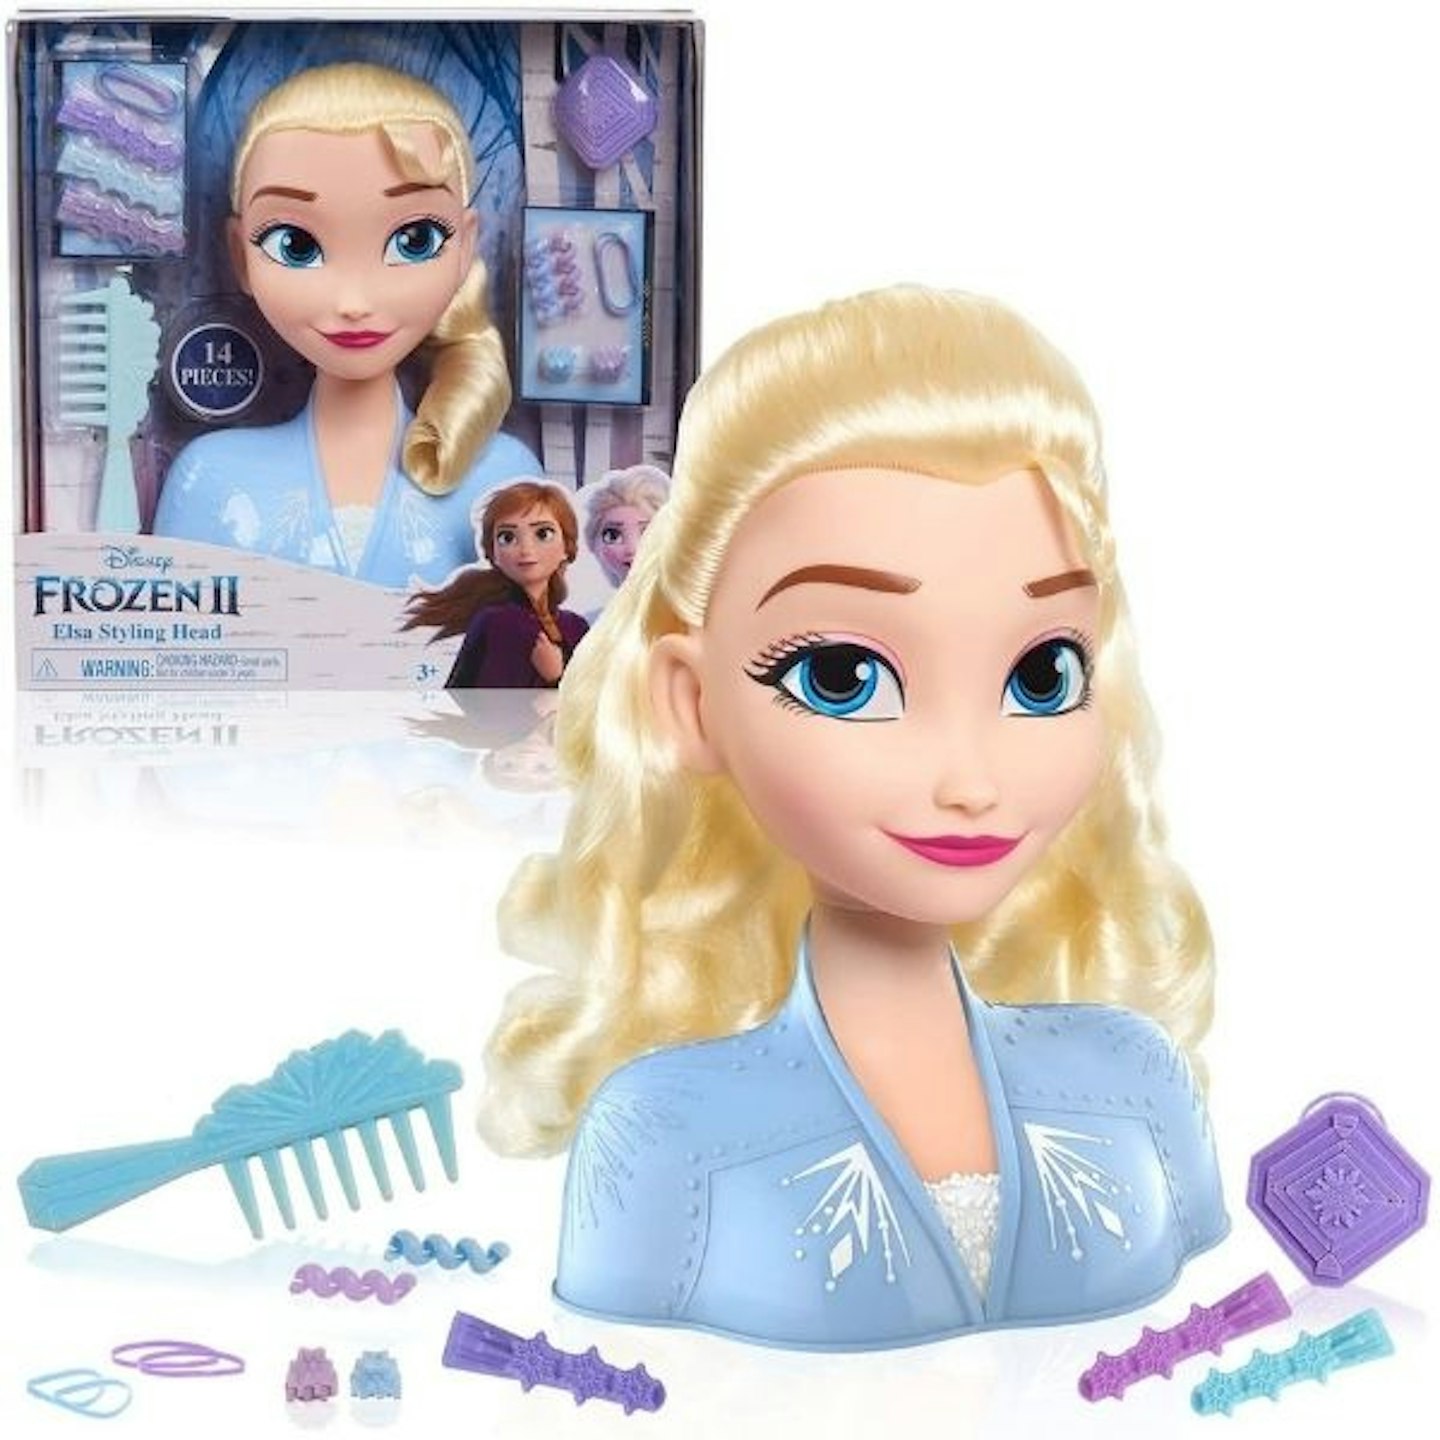 Elsa styling head